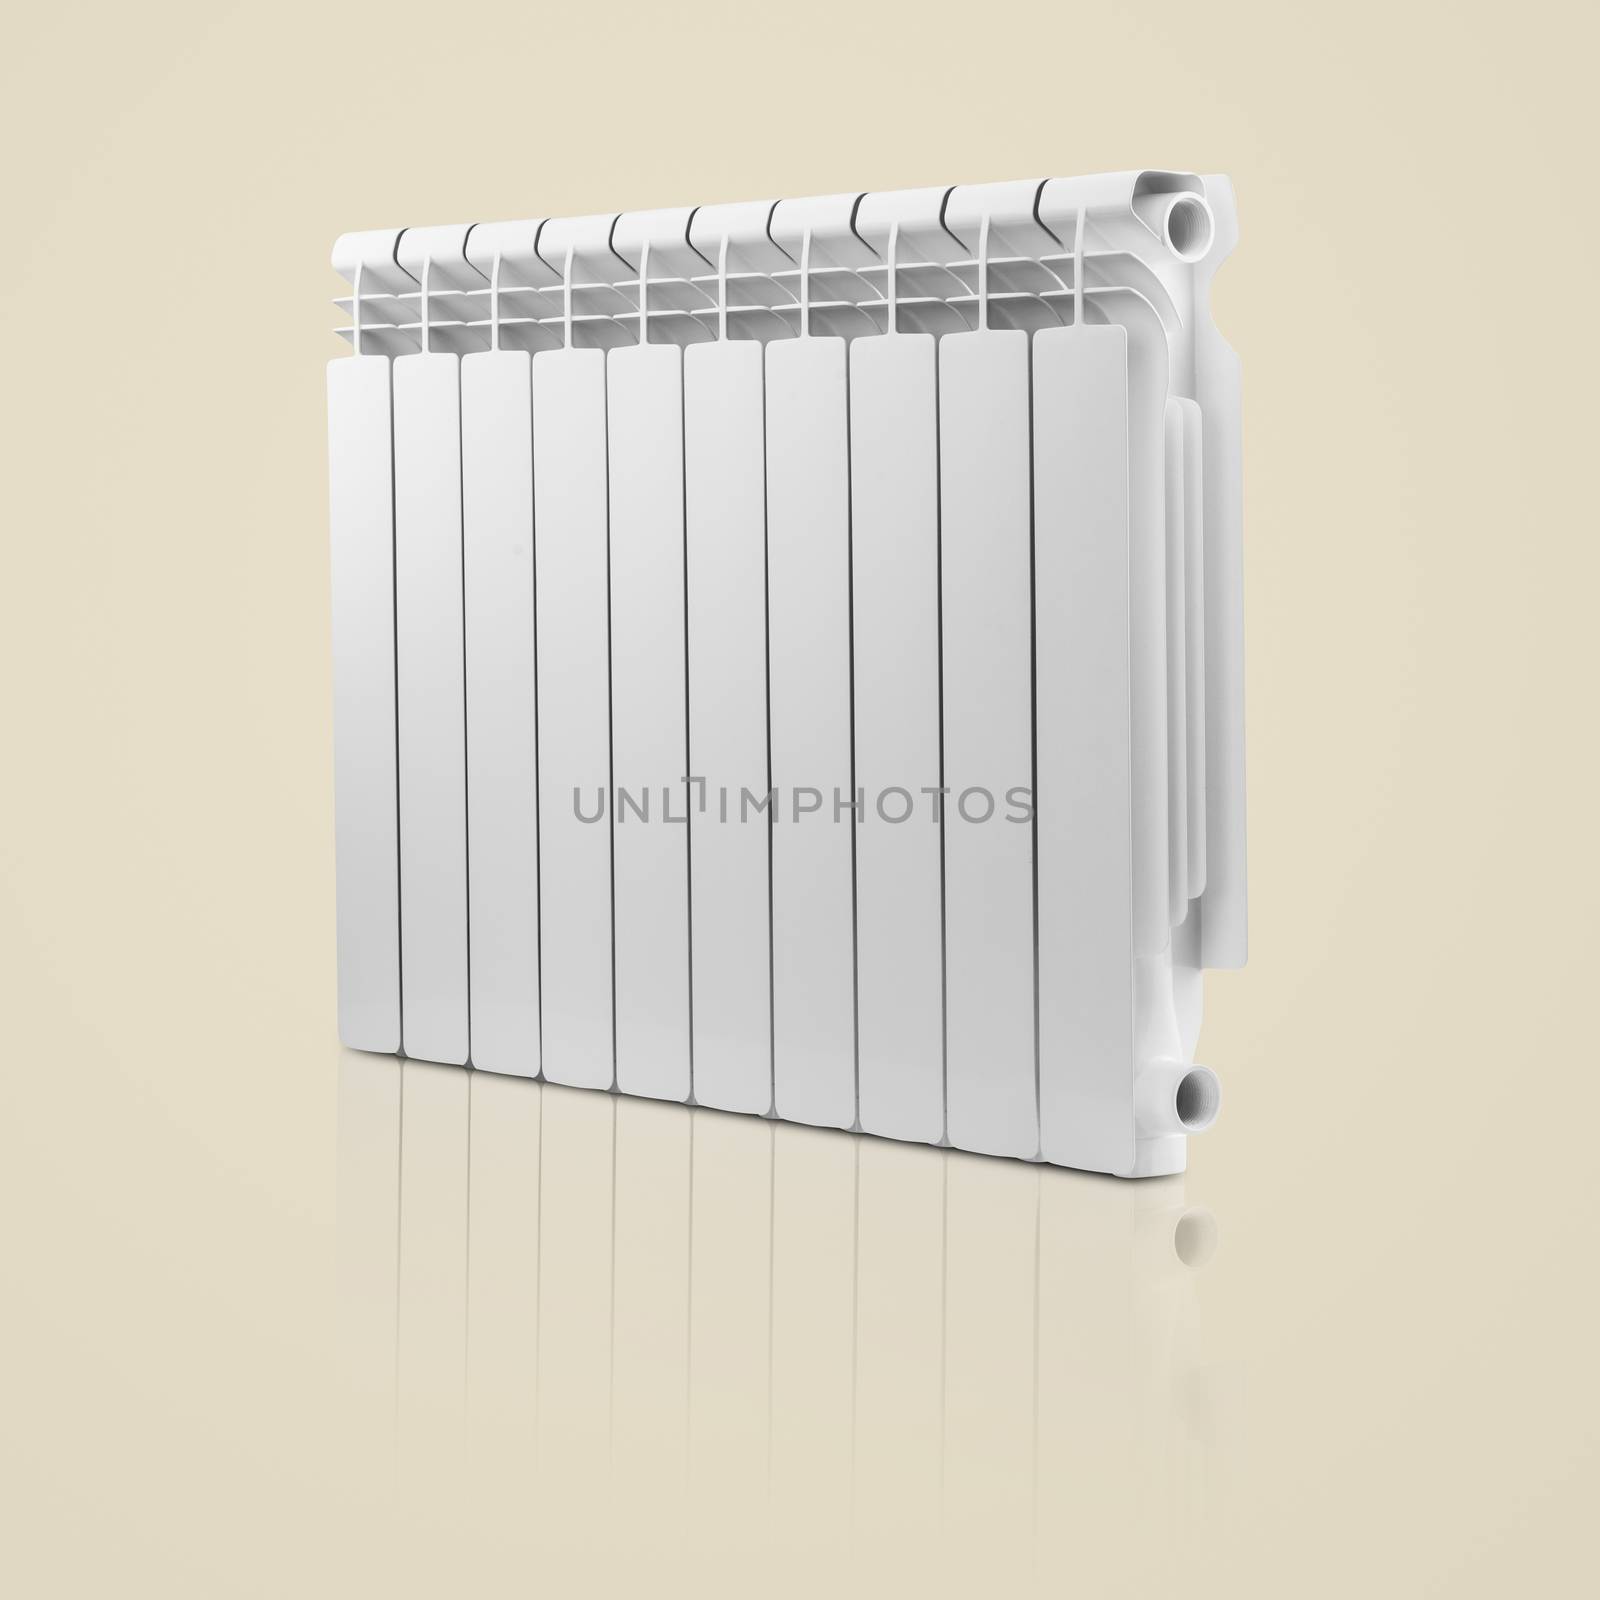 modern radiator on a light background. household bimetallic battery